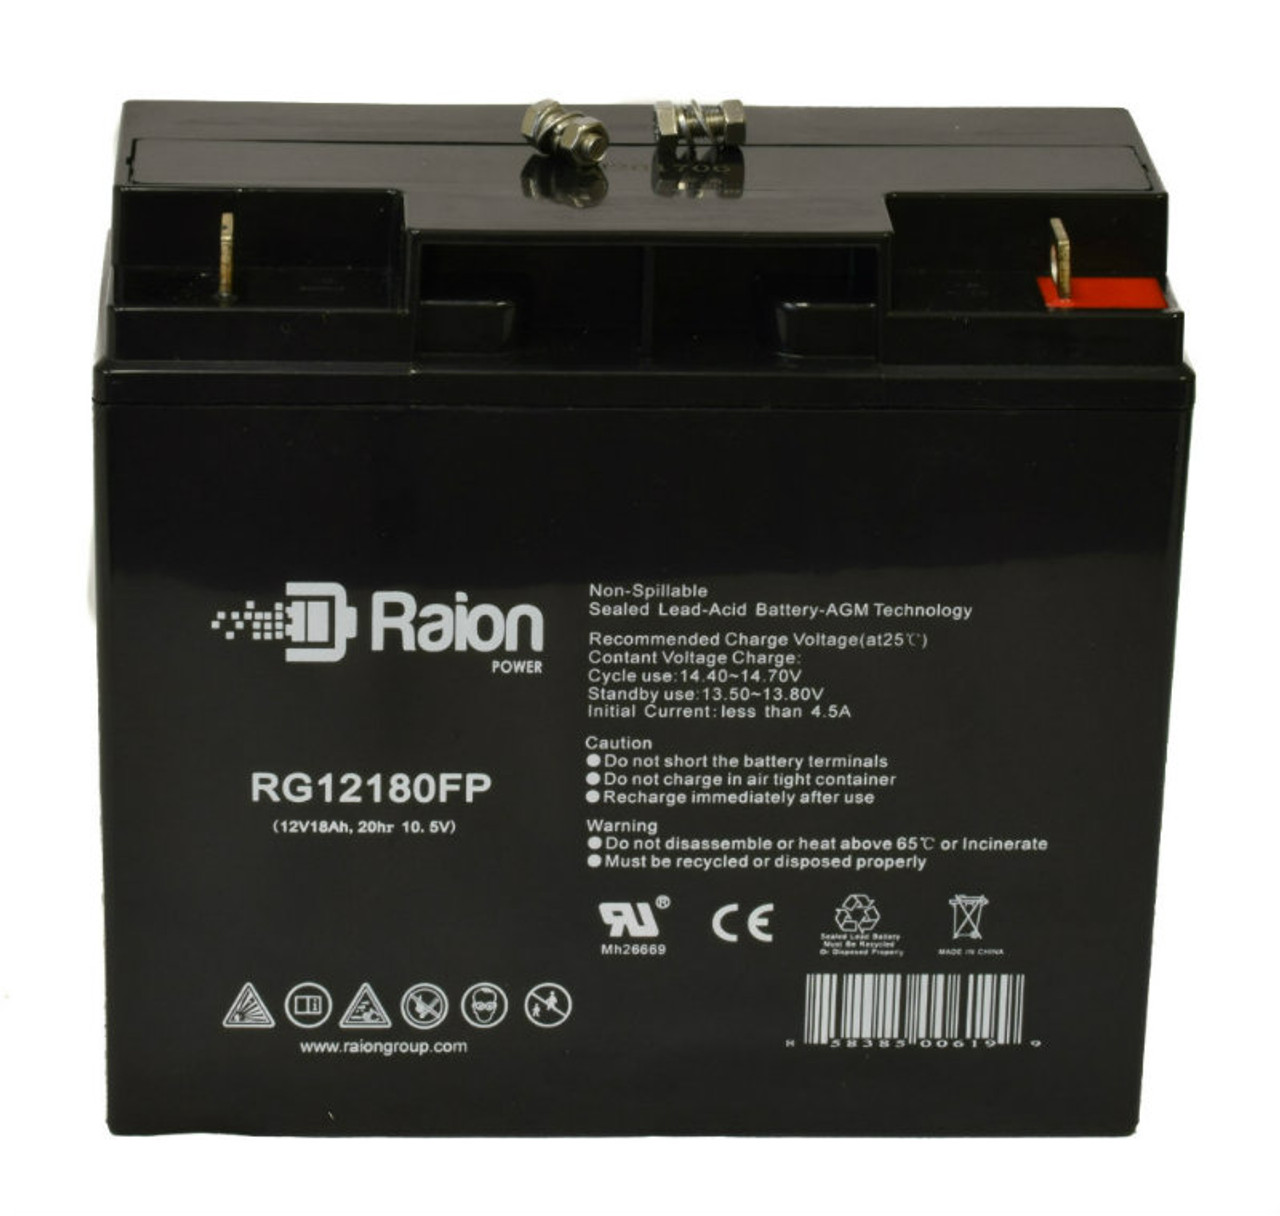 Raion Power RG12180FP 12V 18Ah Lead Acid Battery for Phantom Cables BT-12V-18A